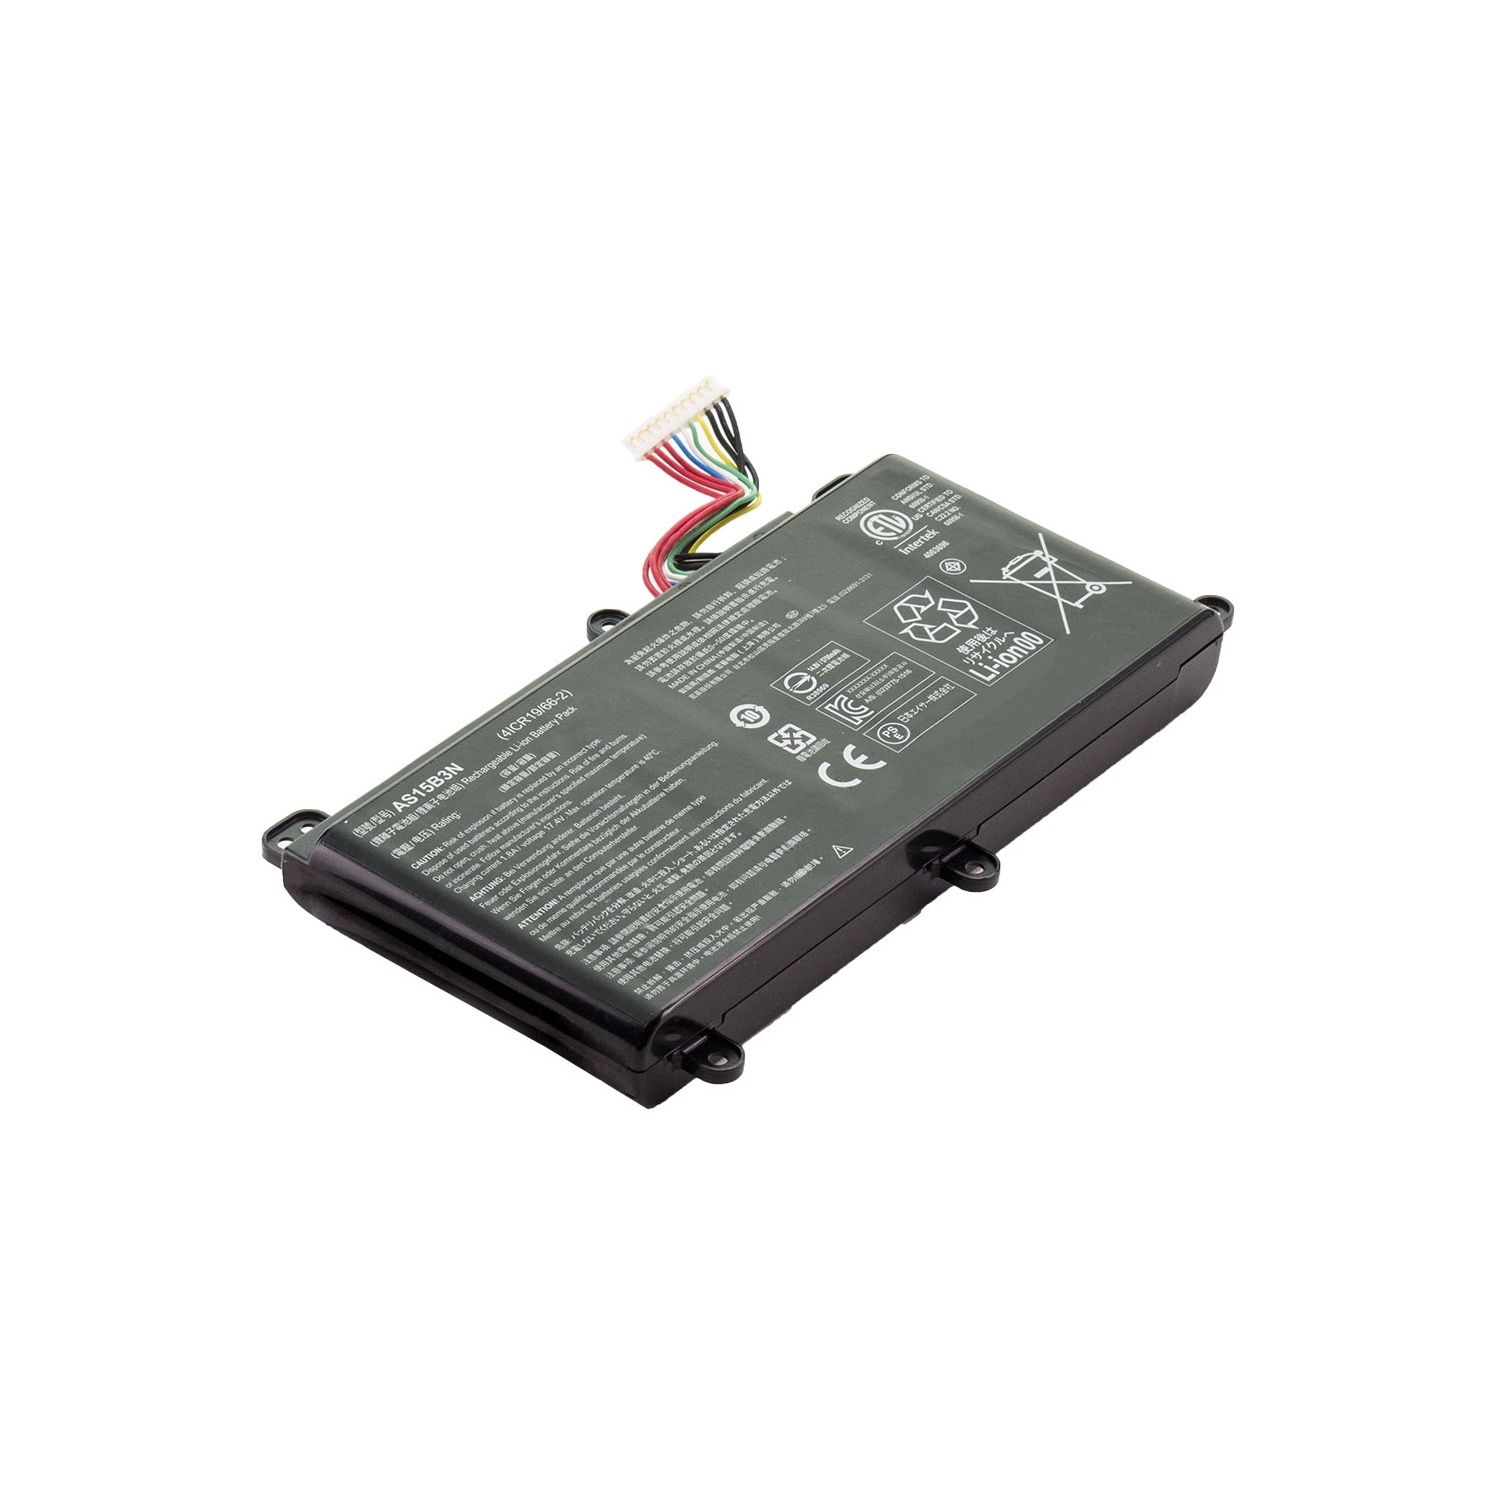 BATTDEPOT NEW Laptop Battery for Acer Predator 15 G9-592-77ZU AS15B3N KT.00803.004 KT.00803.005